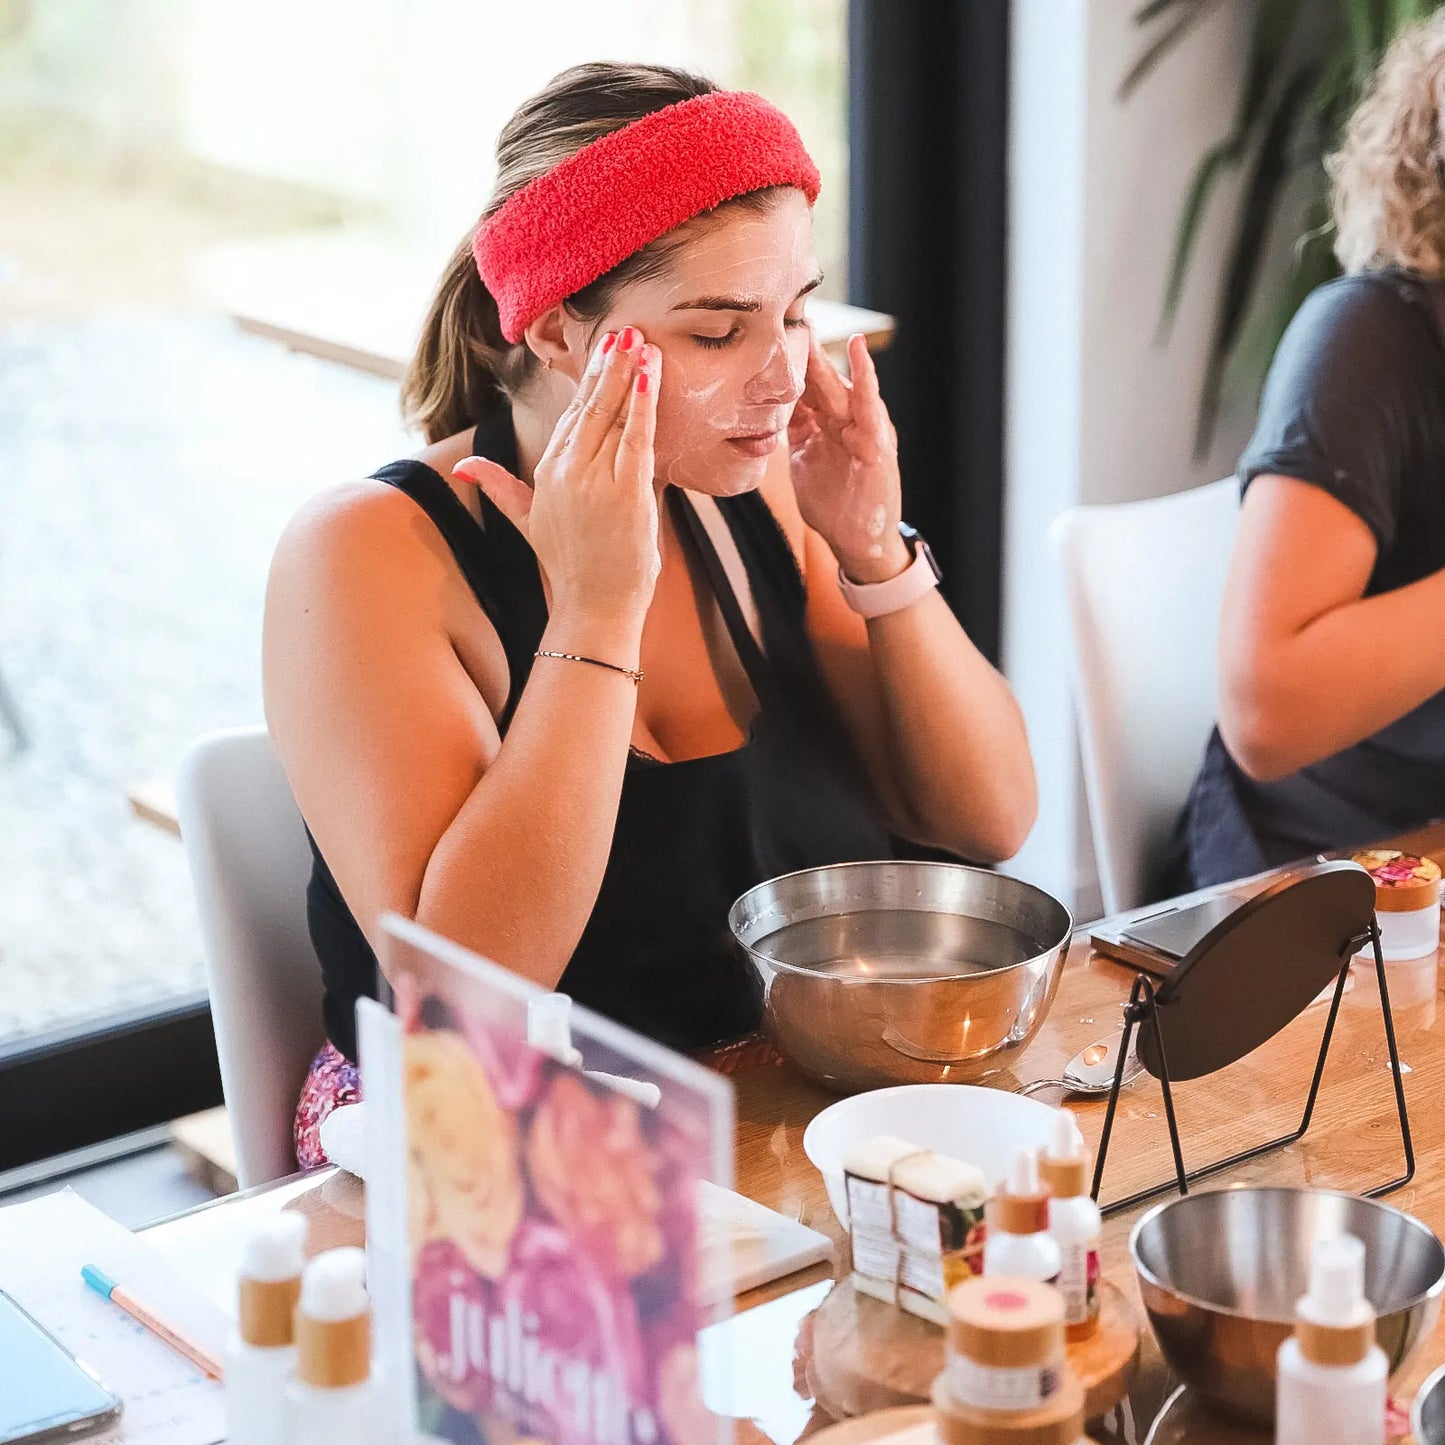 Atelier création cosmétiques naturel bio rituel beauté Belgique France Luxembourg juliette cosmetics